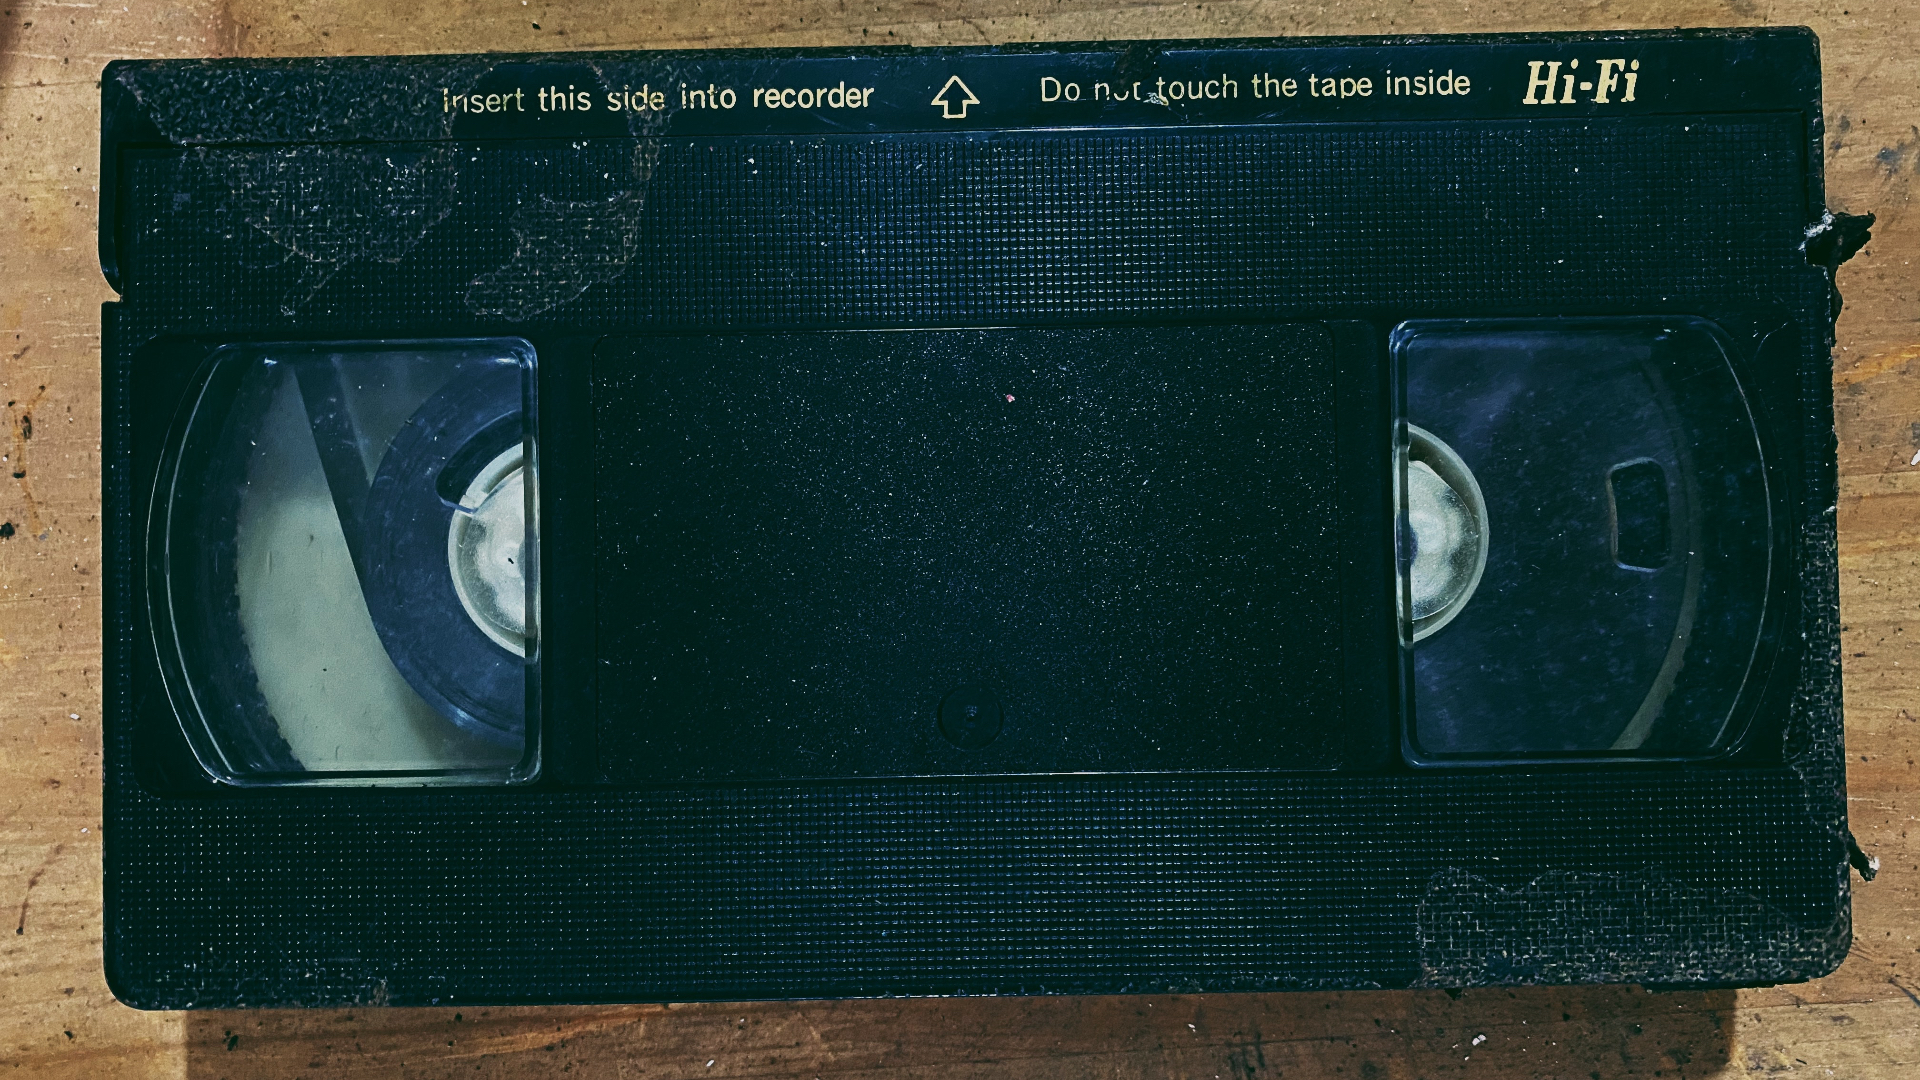 Dalle videocassette all’alta definizione di oggi: storia dell’home video